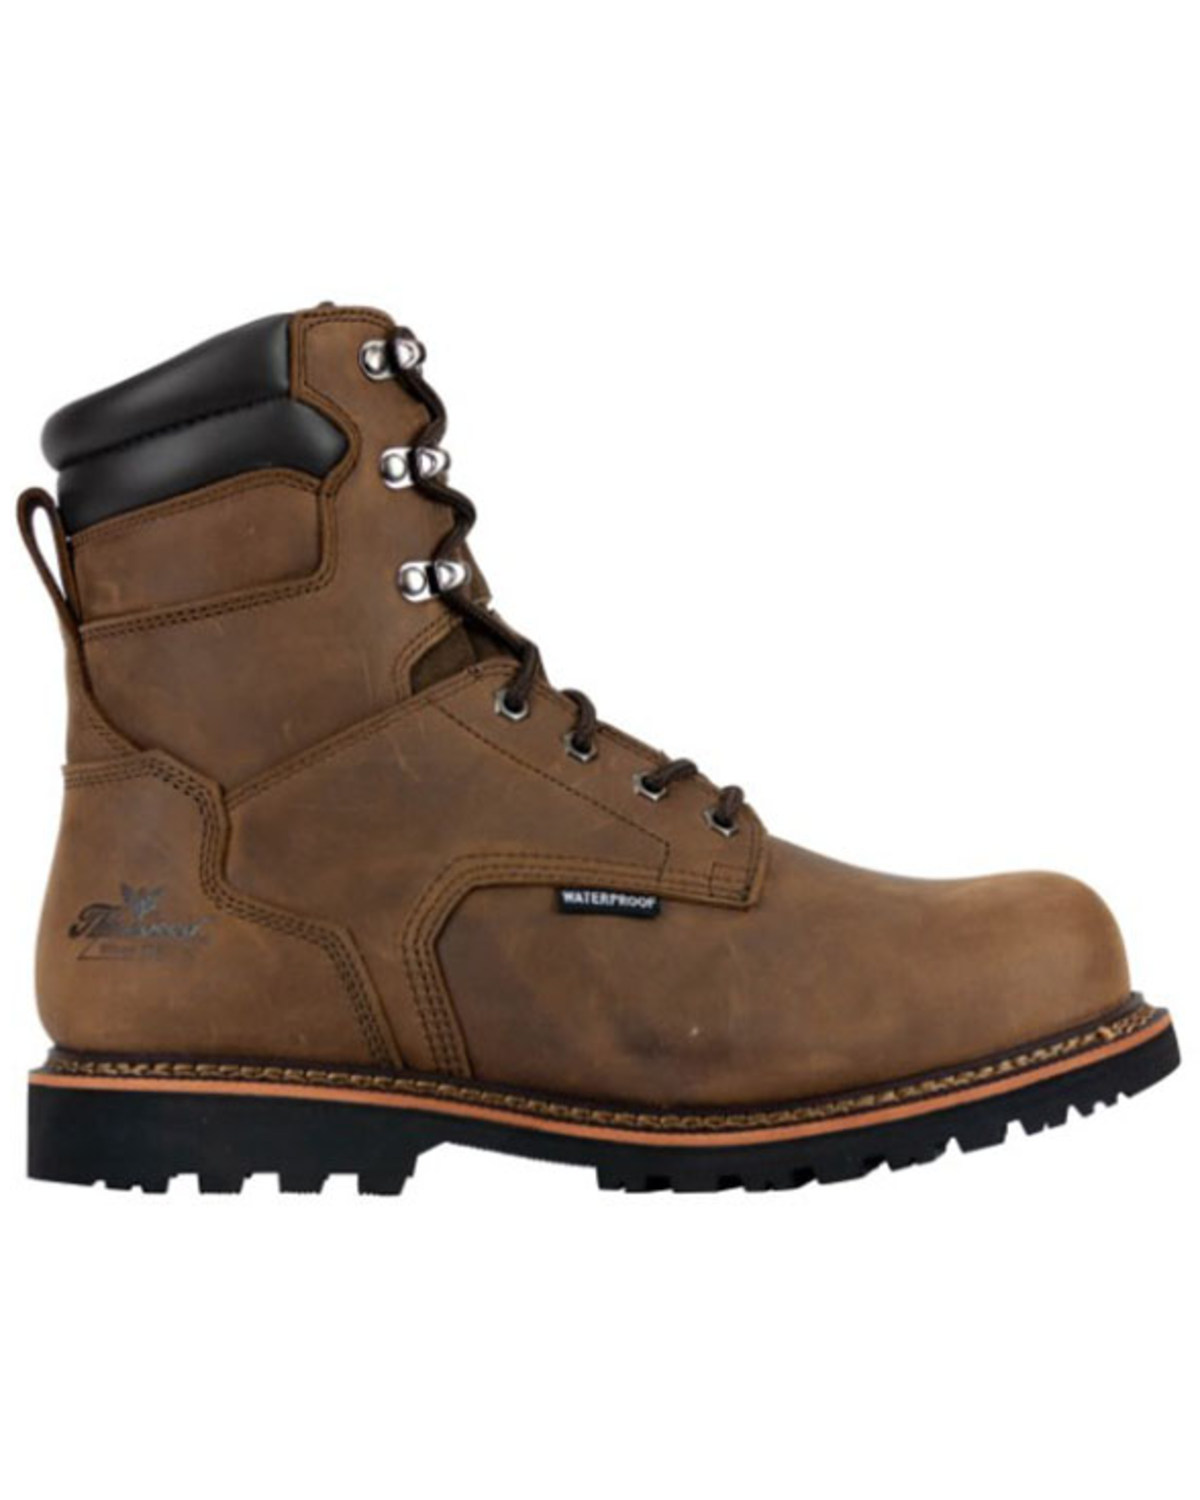 Thorogood Men's V-Series Waterproof Work Boots - Steel Toe